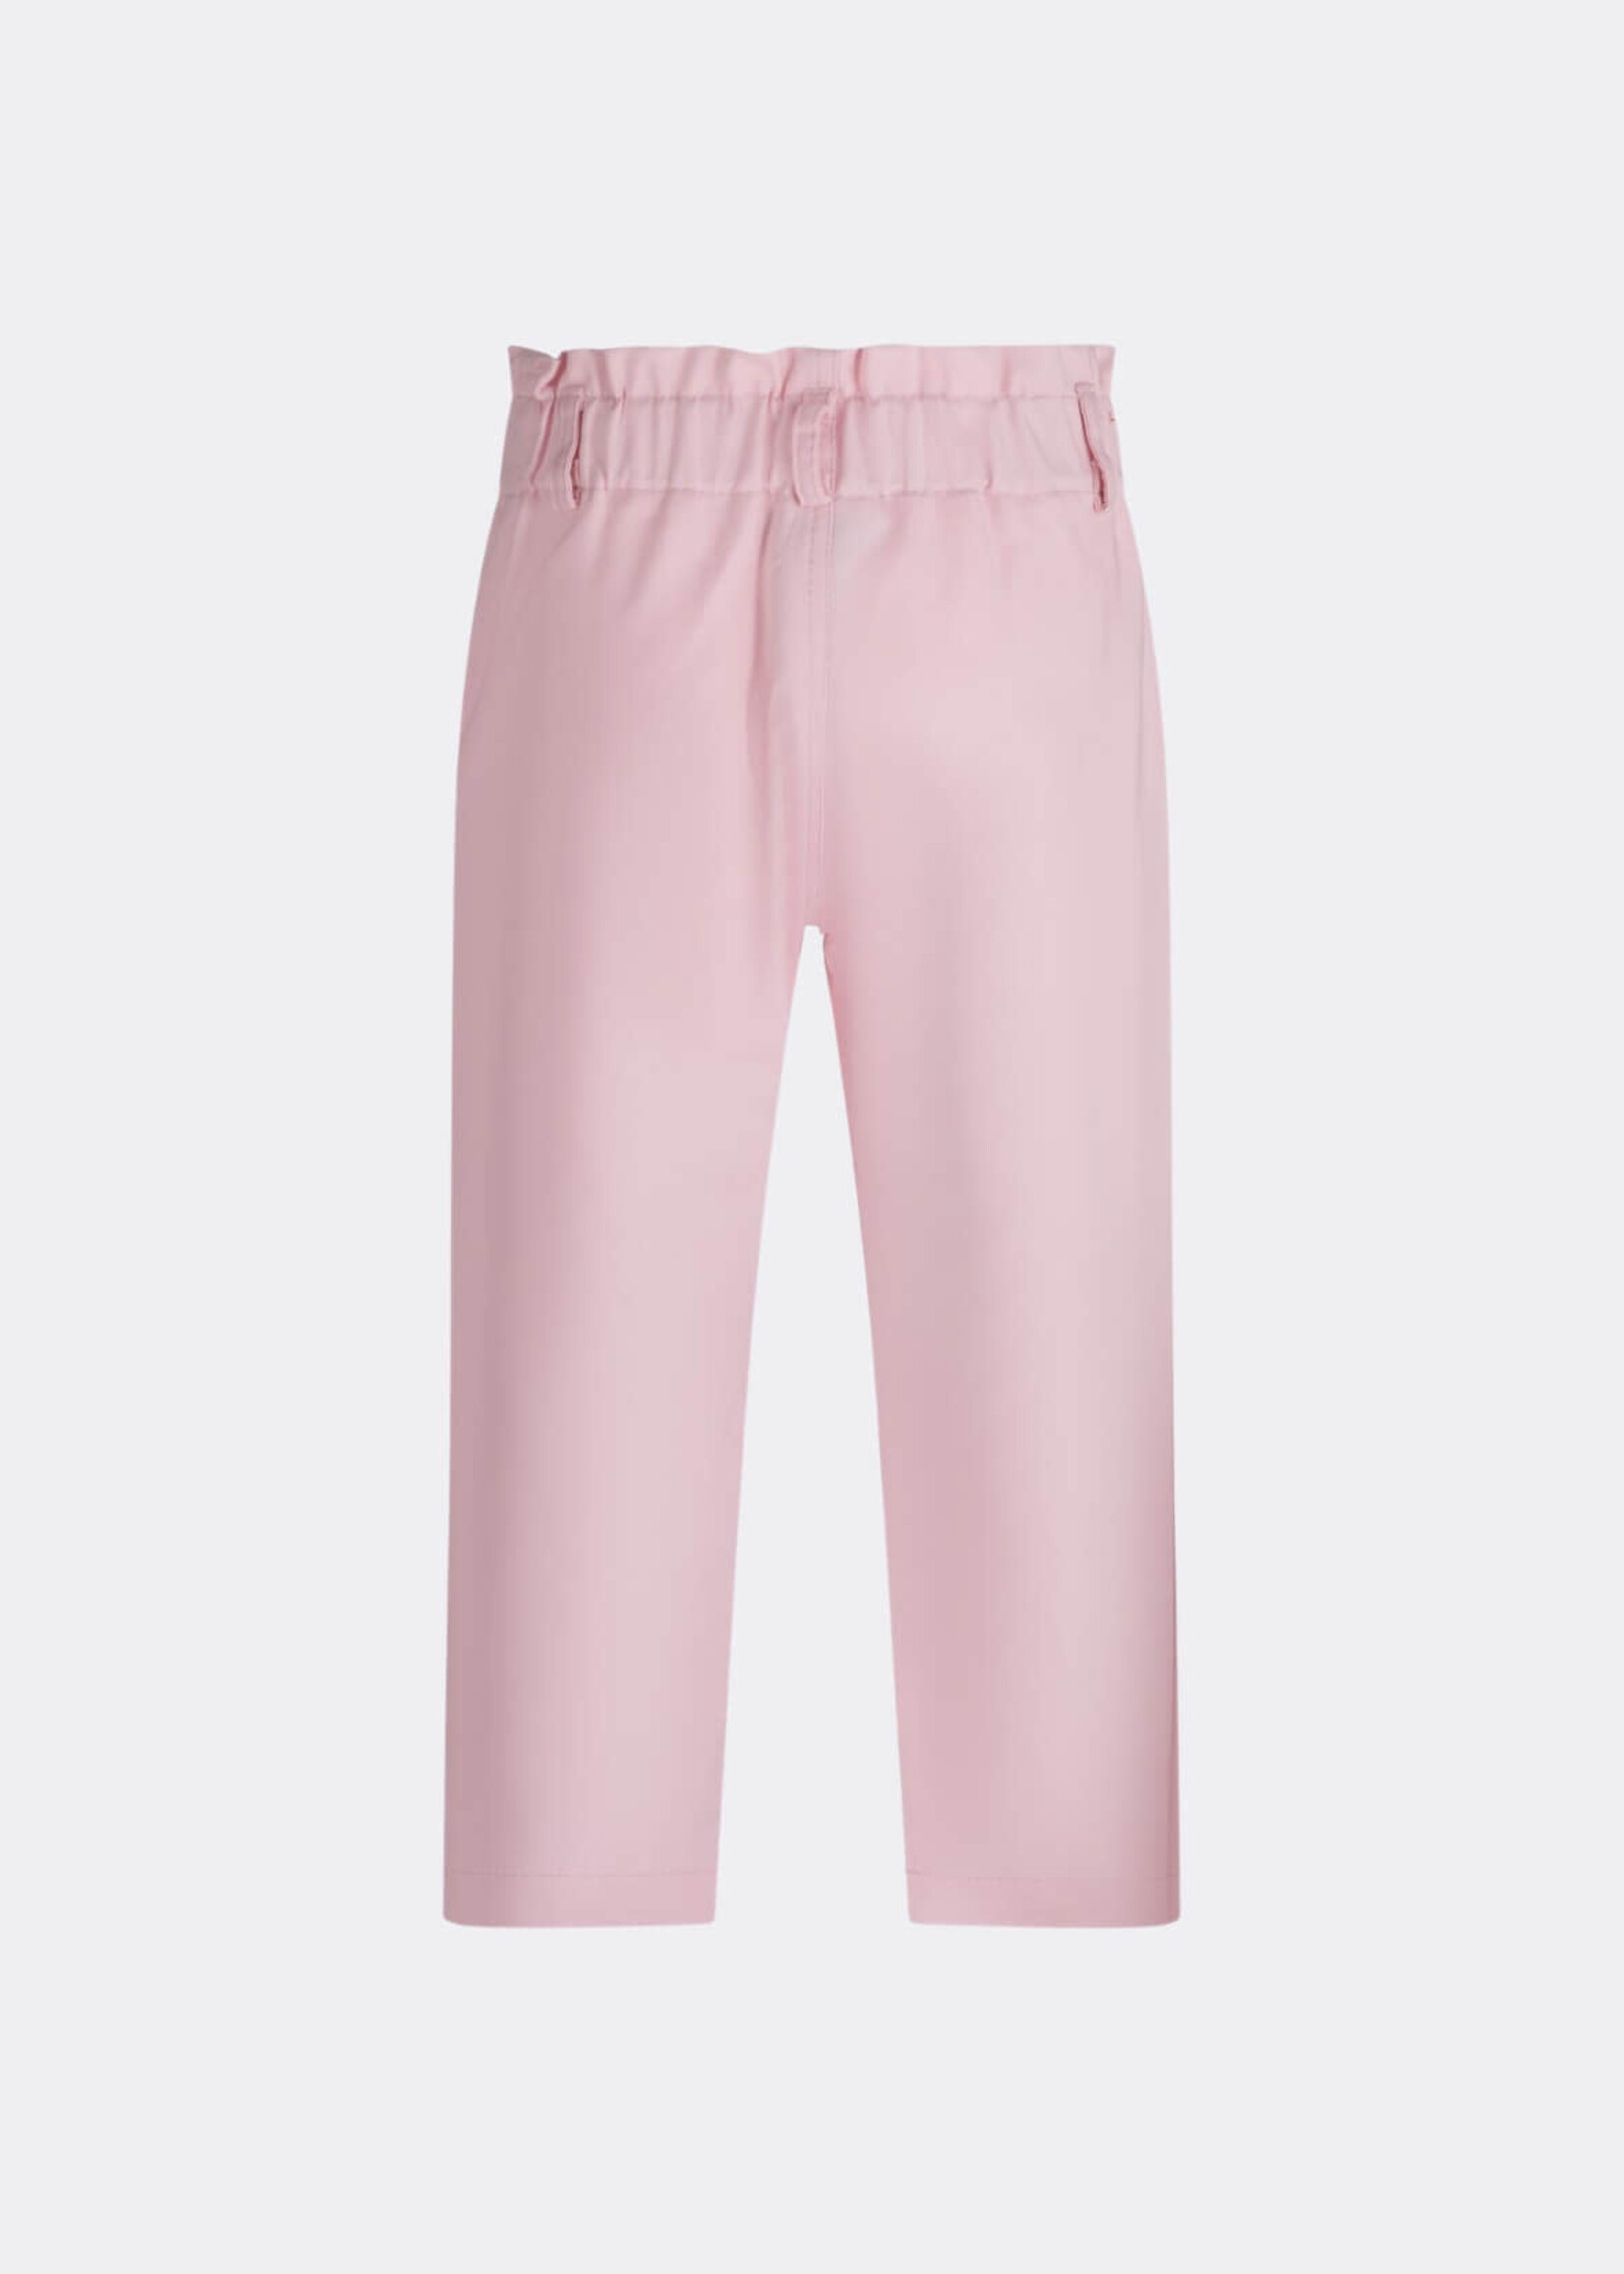 Fun & Fun Pink Trousers